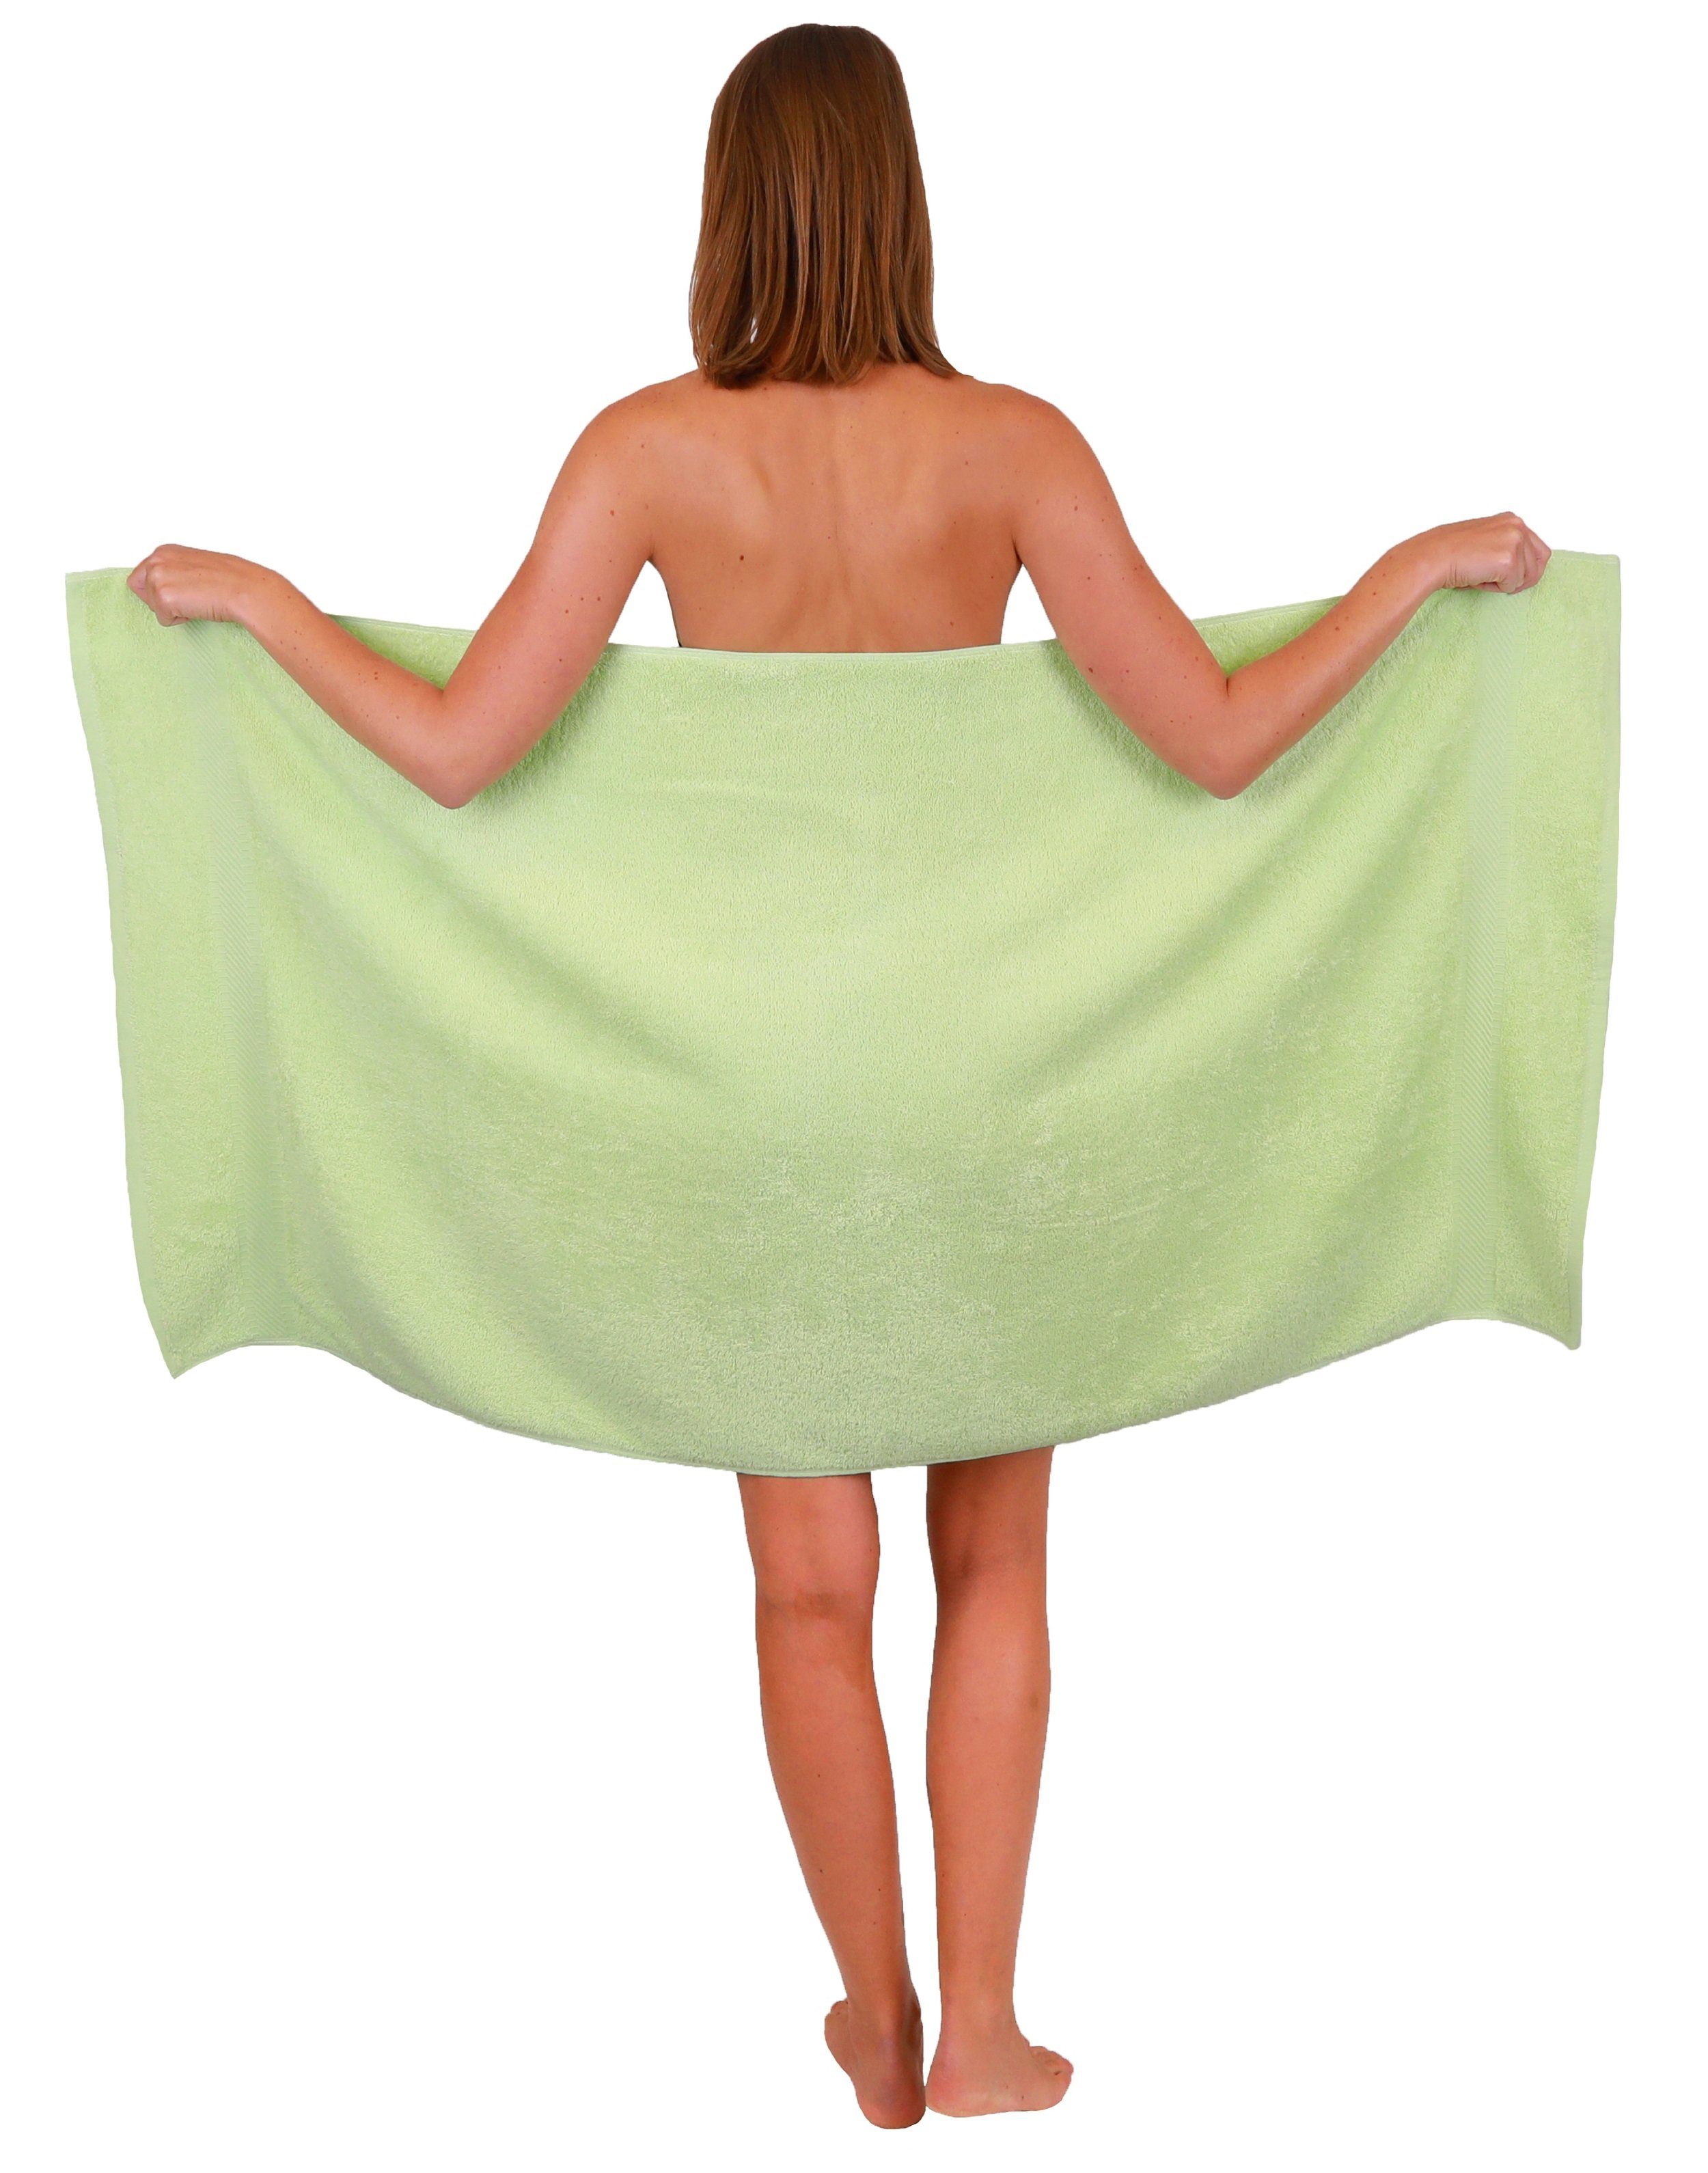 Betz weiß Palermo Handtuch-Set 4 Duschtücher Baumwolle Handtücher 6 100% 100%Baumwolle und grün, Handtuch Set Farbe 10-TLG.